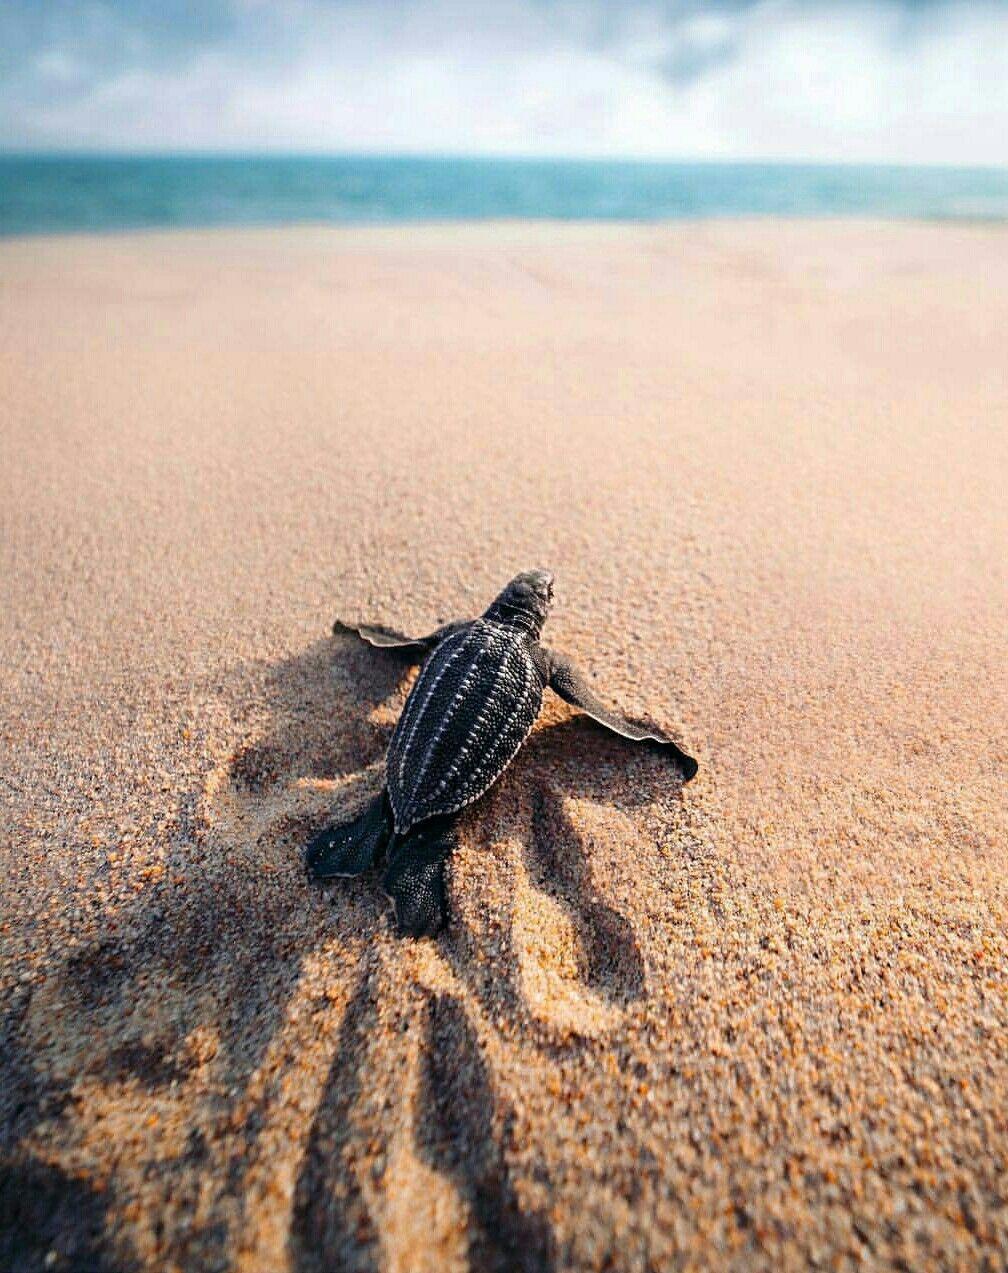 Baby Leatherback Sea Turtle. turtles <3. Baby sea turtles